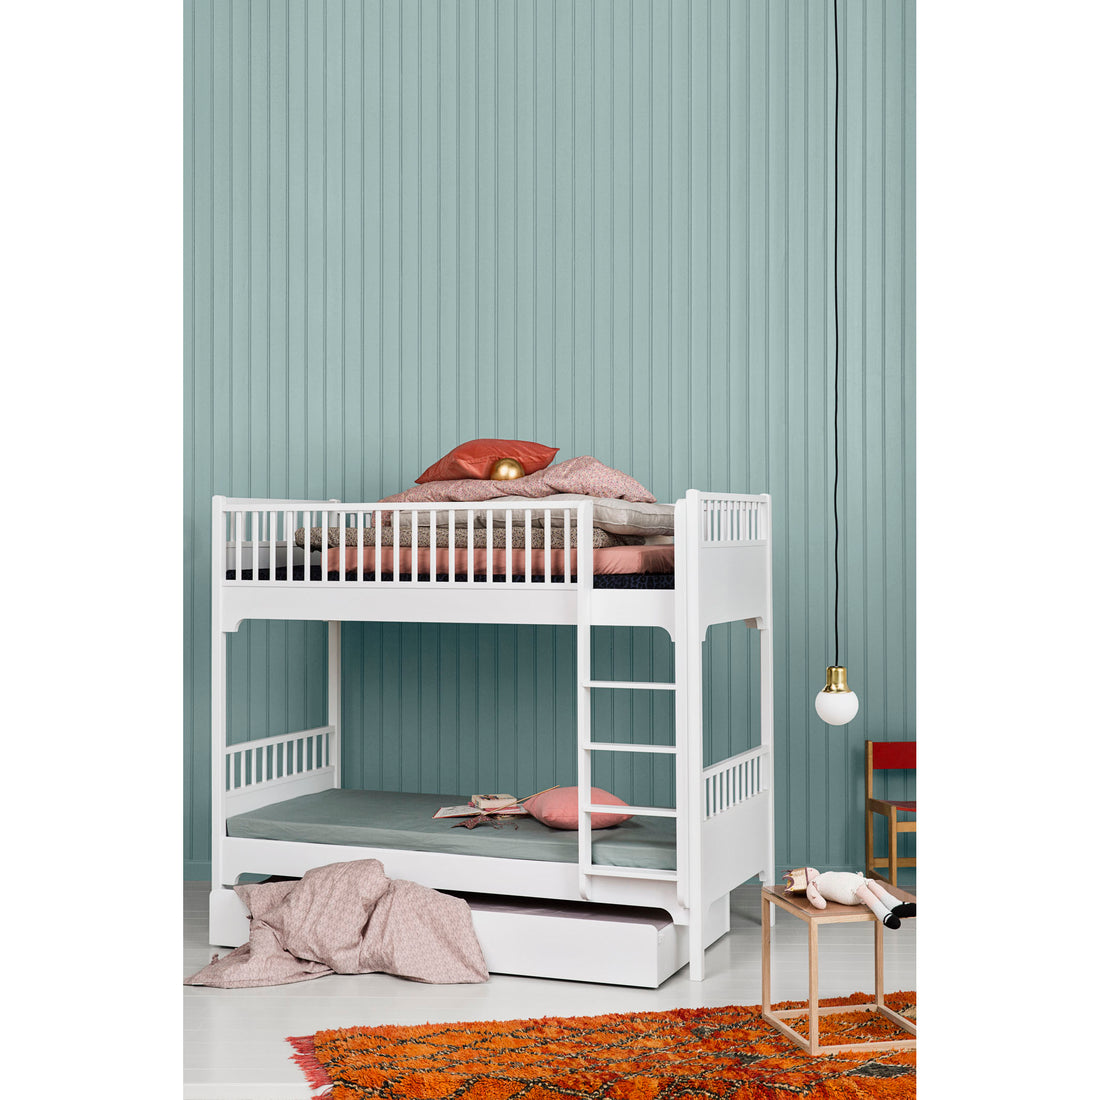 oliver-furniture-seaside-bunk-bed-with-vertical-ladder- (7)